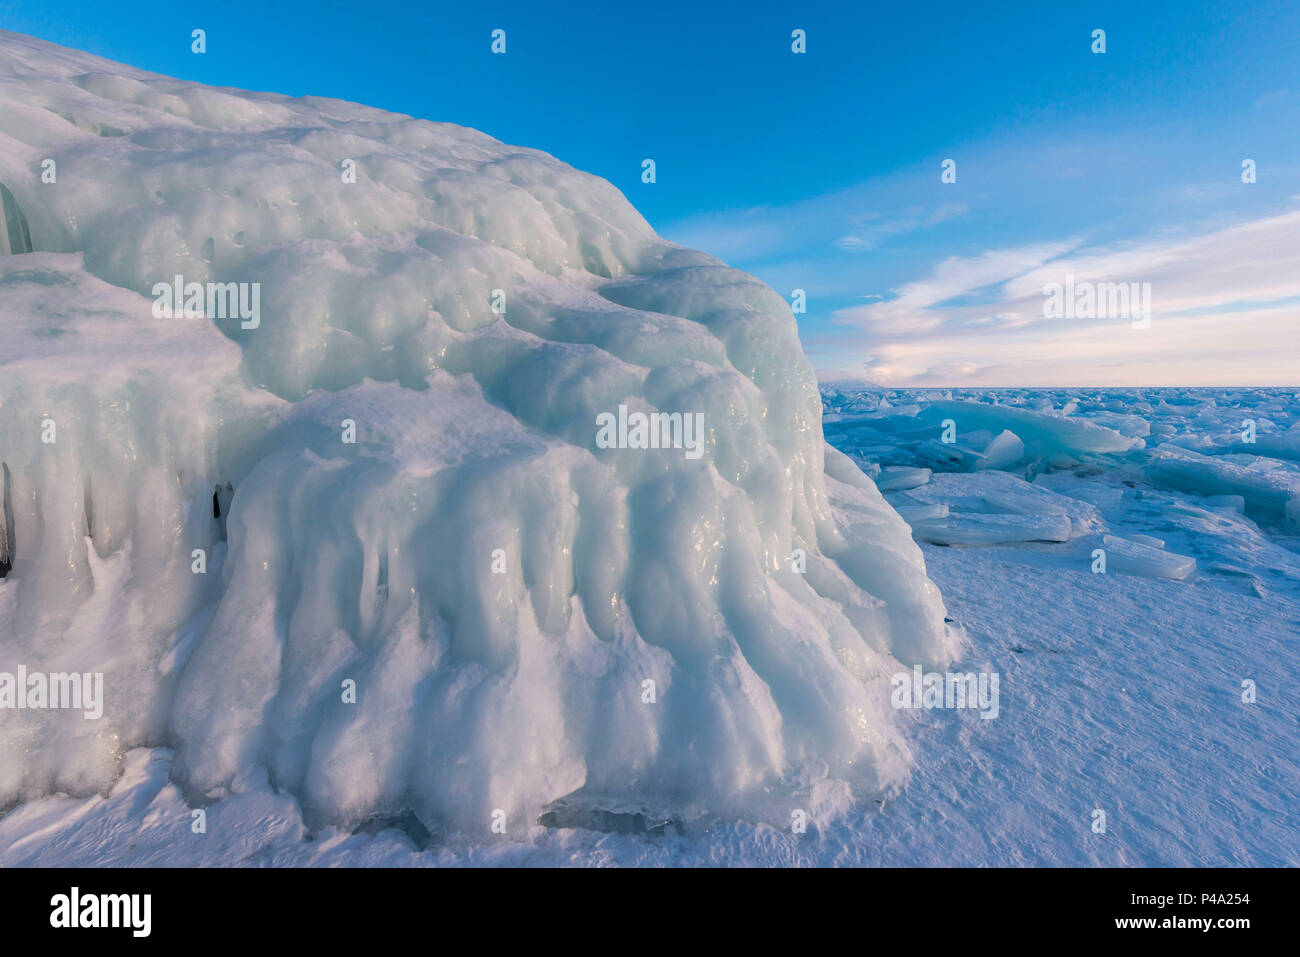 La roccia coperta da ghiaccio, lago Bajkal, Regione di Irkutsk, Siberia, Russia Foto Stock